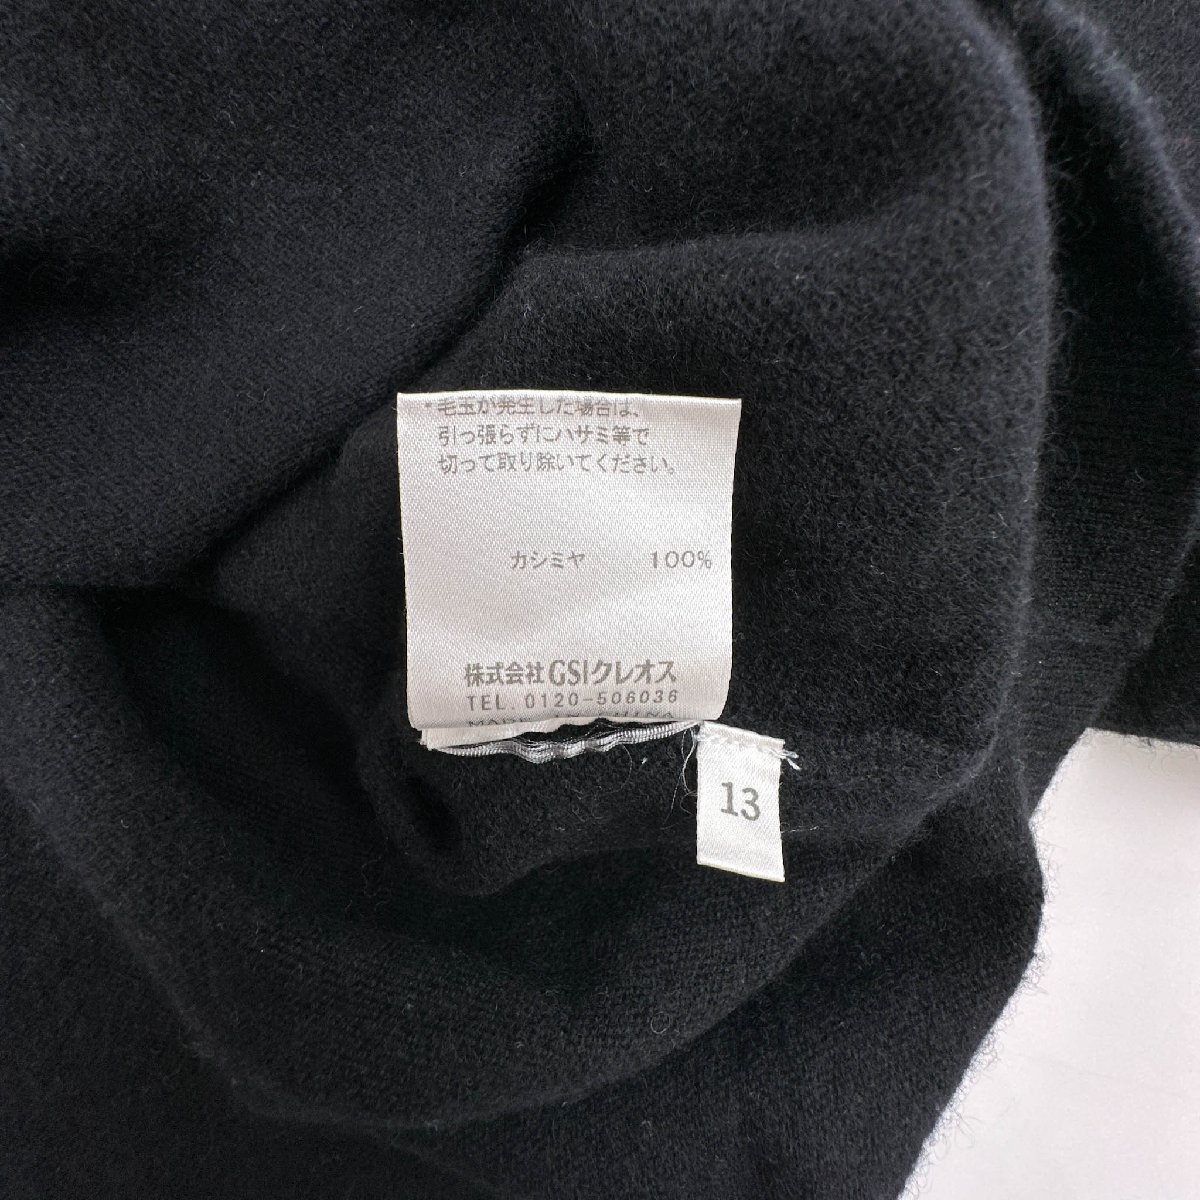 カシミヤ100%◆NONA カシミアウール ハイネック 長袖 ニット セーター サイズ 13/ブラック 黒/レディース_画像5